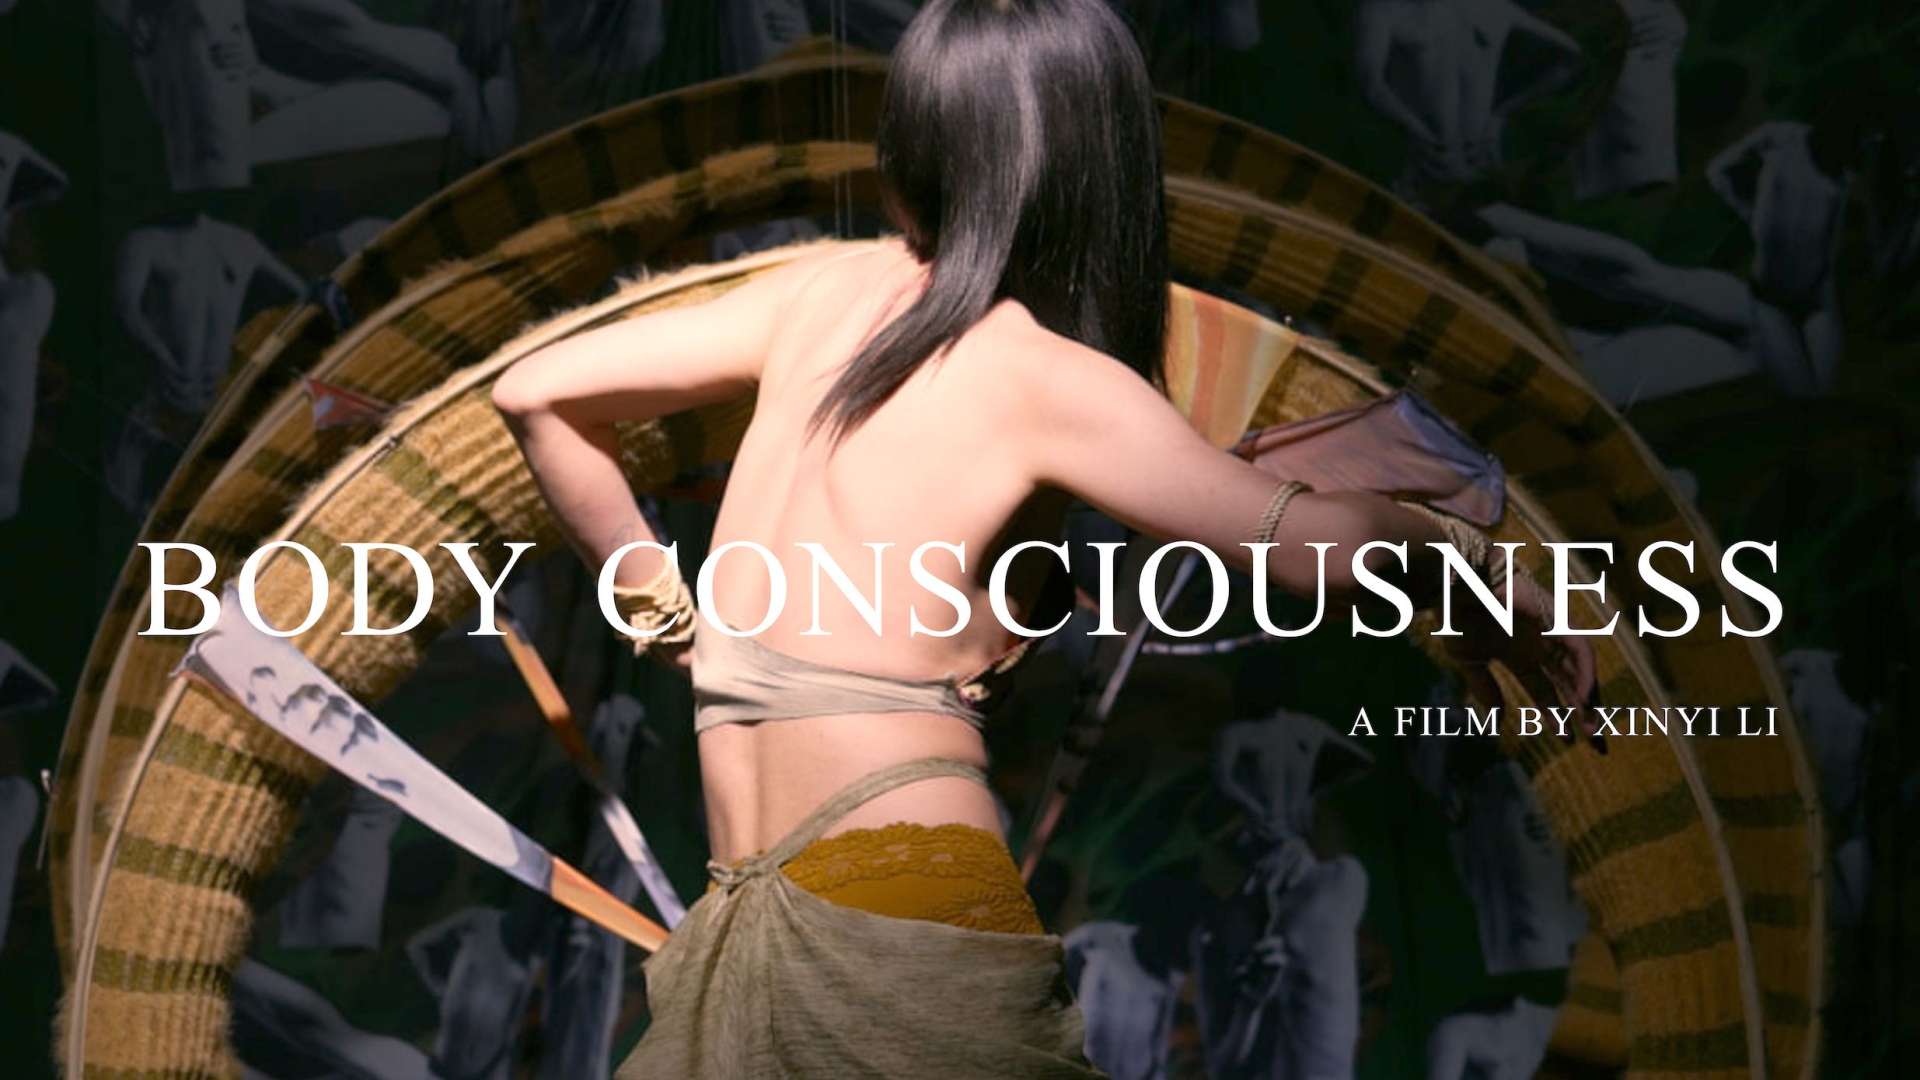 Body consciousness